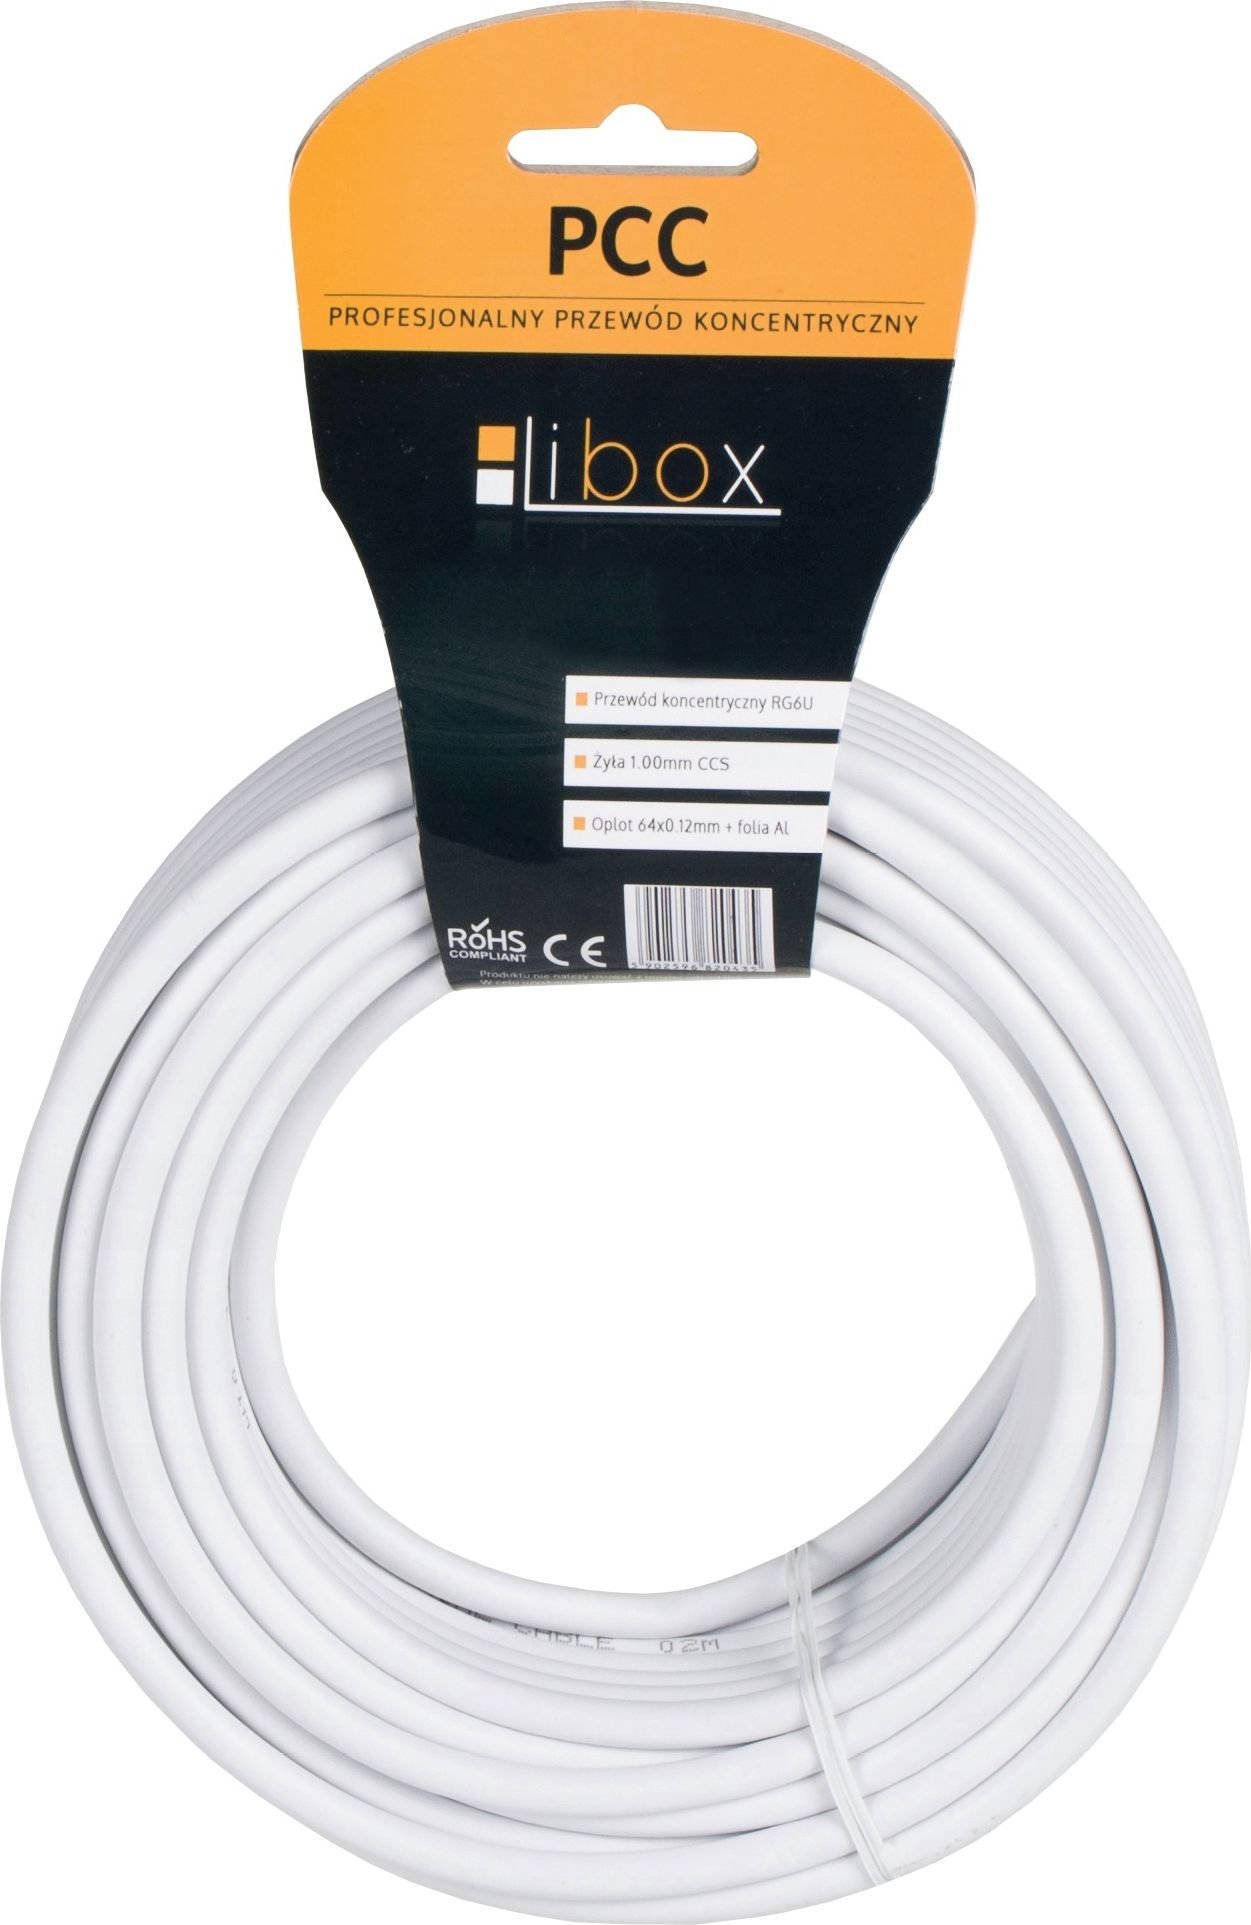 Cablu Libox SAT Trishield HD/15m PCC102-15 LIBOX